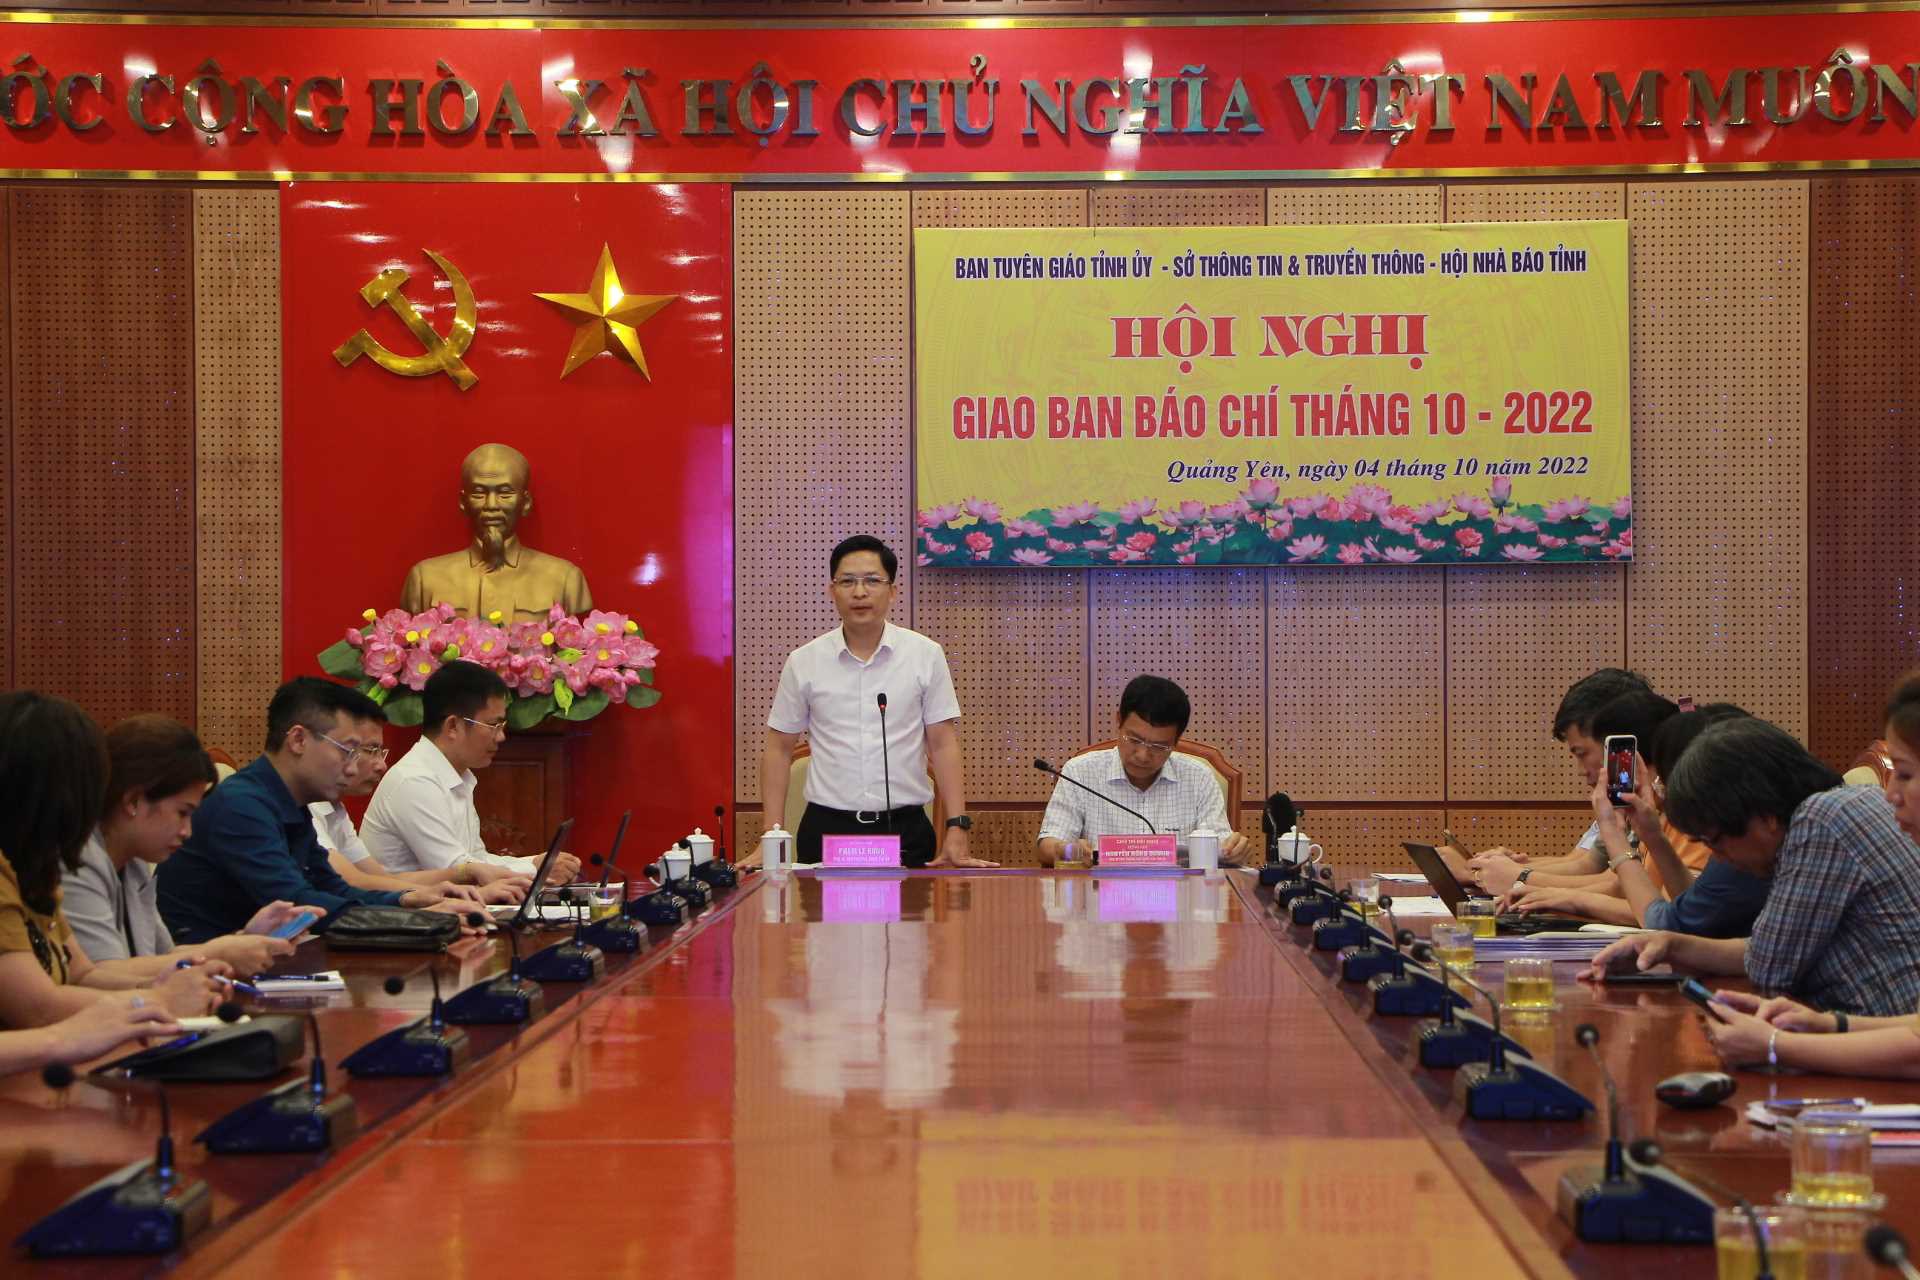 Chú thích ảnh: Ông Phạm Lê Hưng, Phó Bí thư Thường trực Thị ủy Quảng Yên  báo cáo kết quả kinh tế, chính trị, xã hội 9 tháng năm 2022 tại hội nghị giao ban